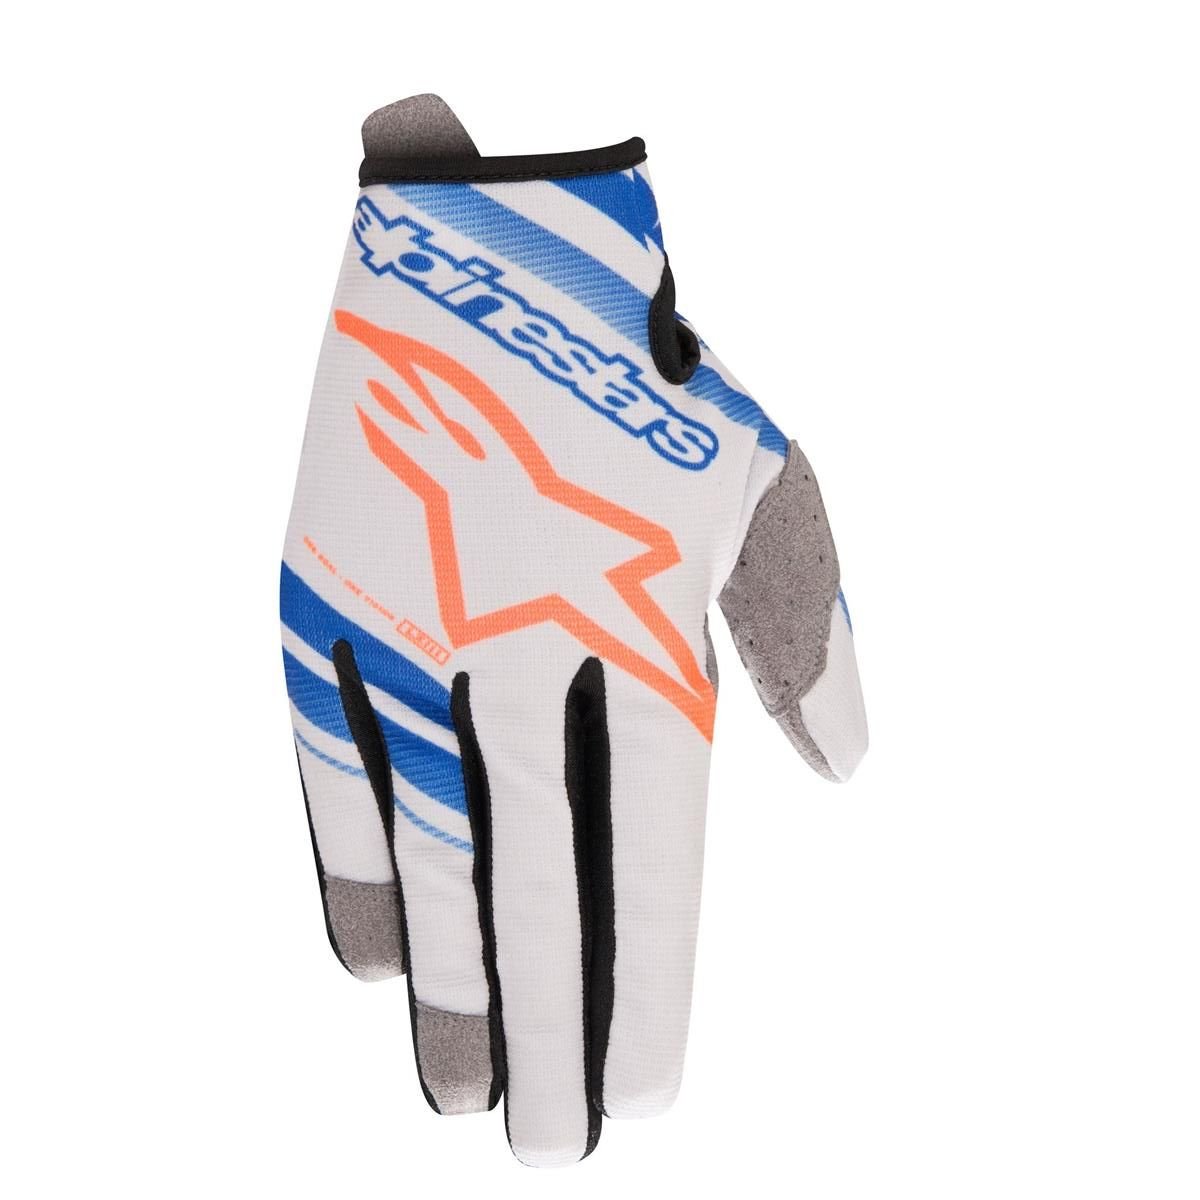 Alpinestars Gloves Radar Cool Grey/Blue/Orange Fluo